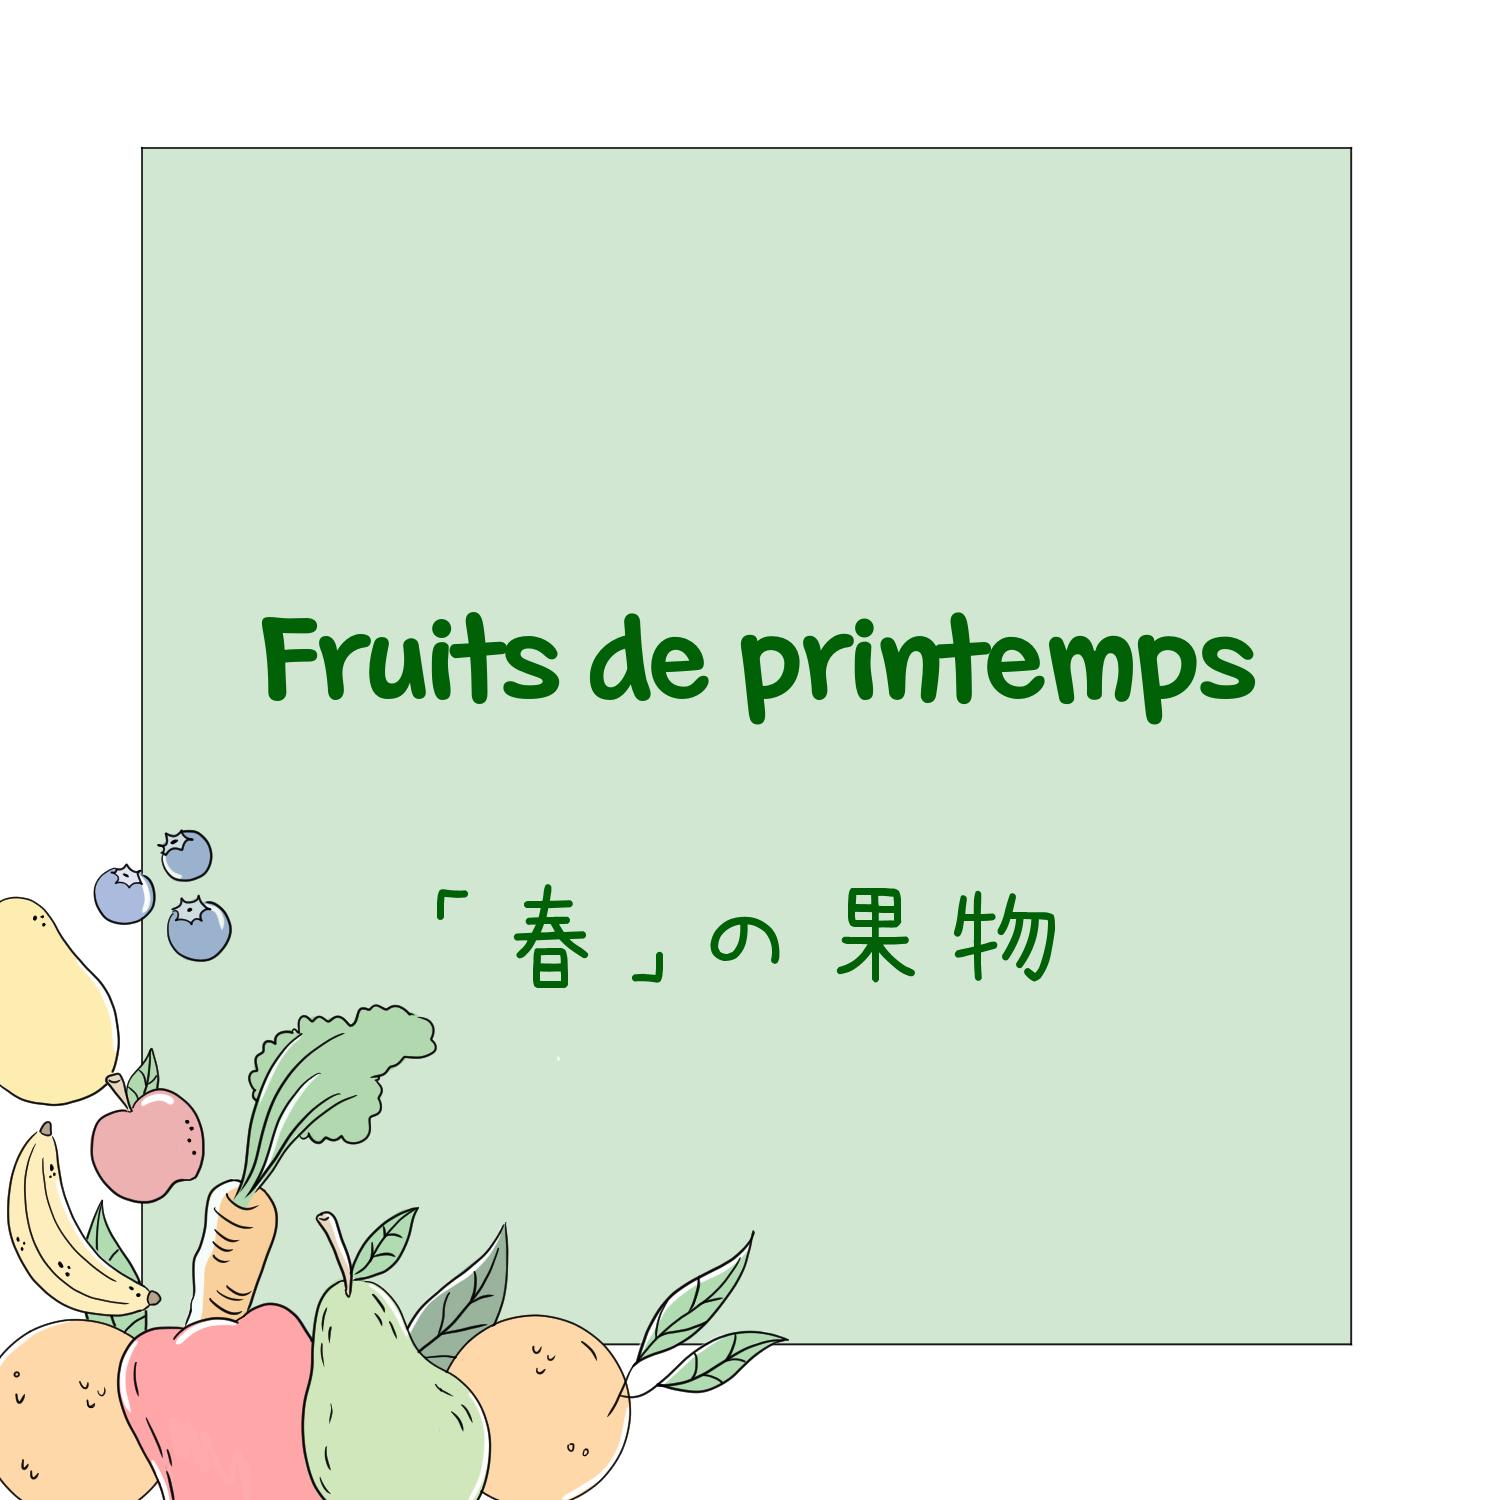 0) Fruits de printemps